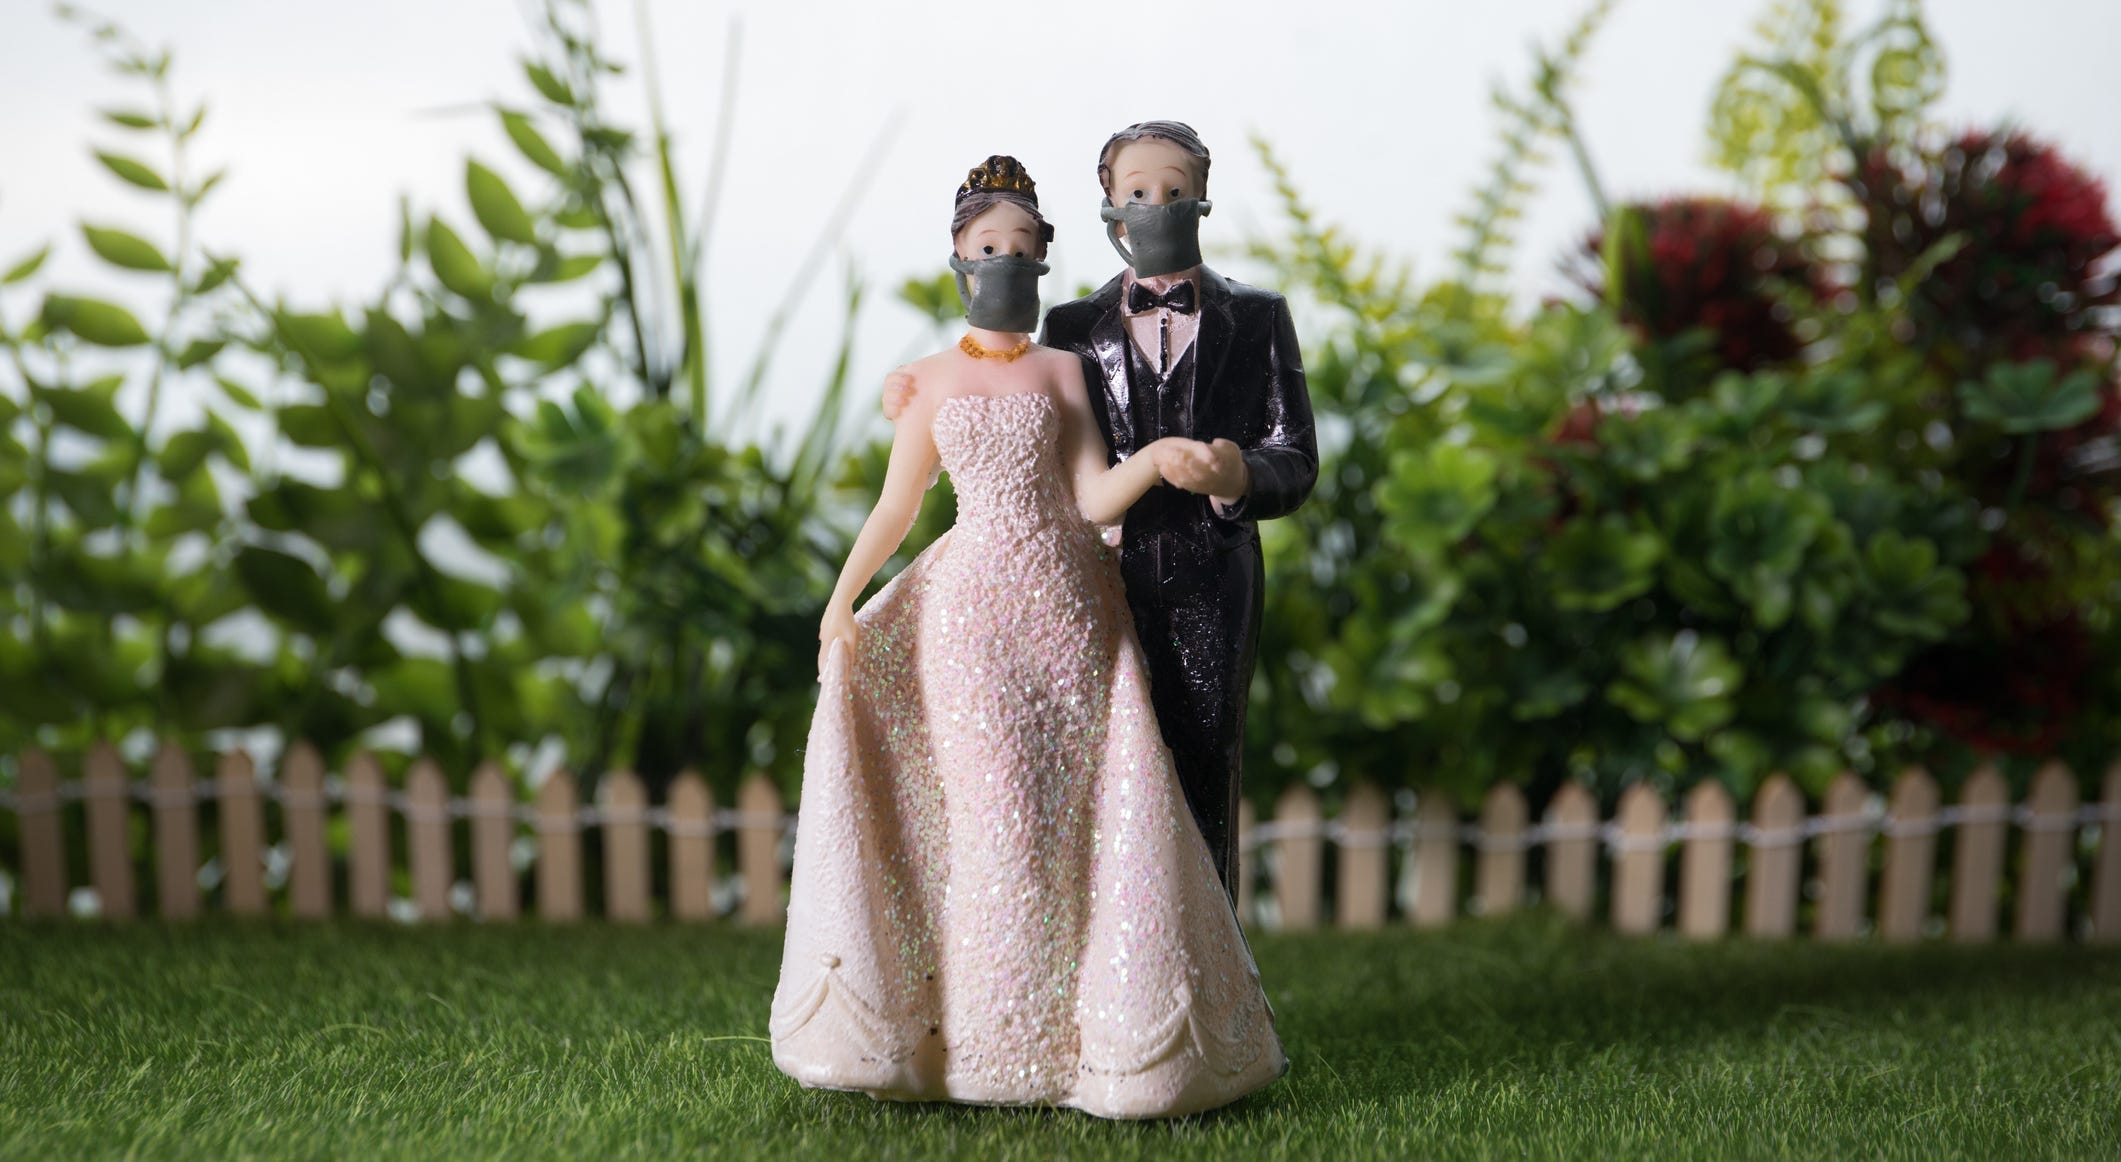 Son Dakika: Rize'de Düğünlerde Yapılan İkramlar Yasaklandı